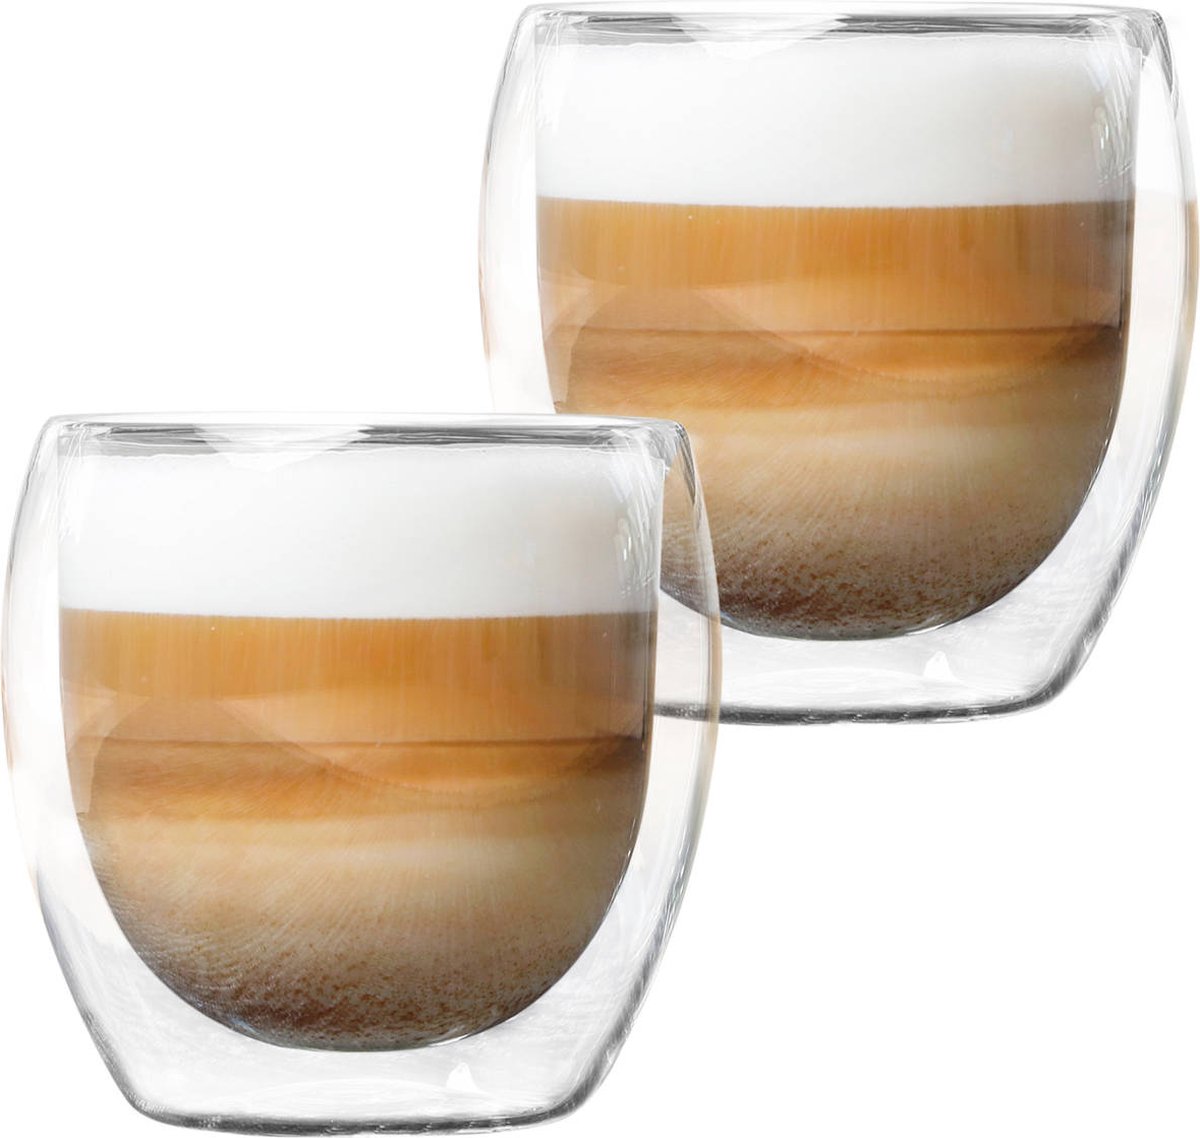 MONOO Dubbelwandige Koffieglazen - 250ml - Set van 2 - Cappuccino Glazen - Latte Macchiato Glazen